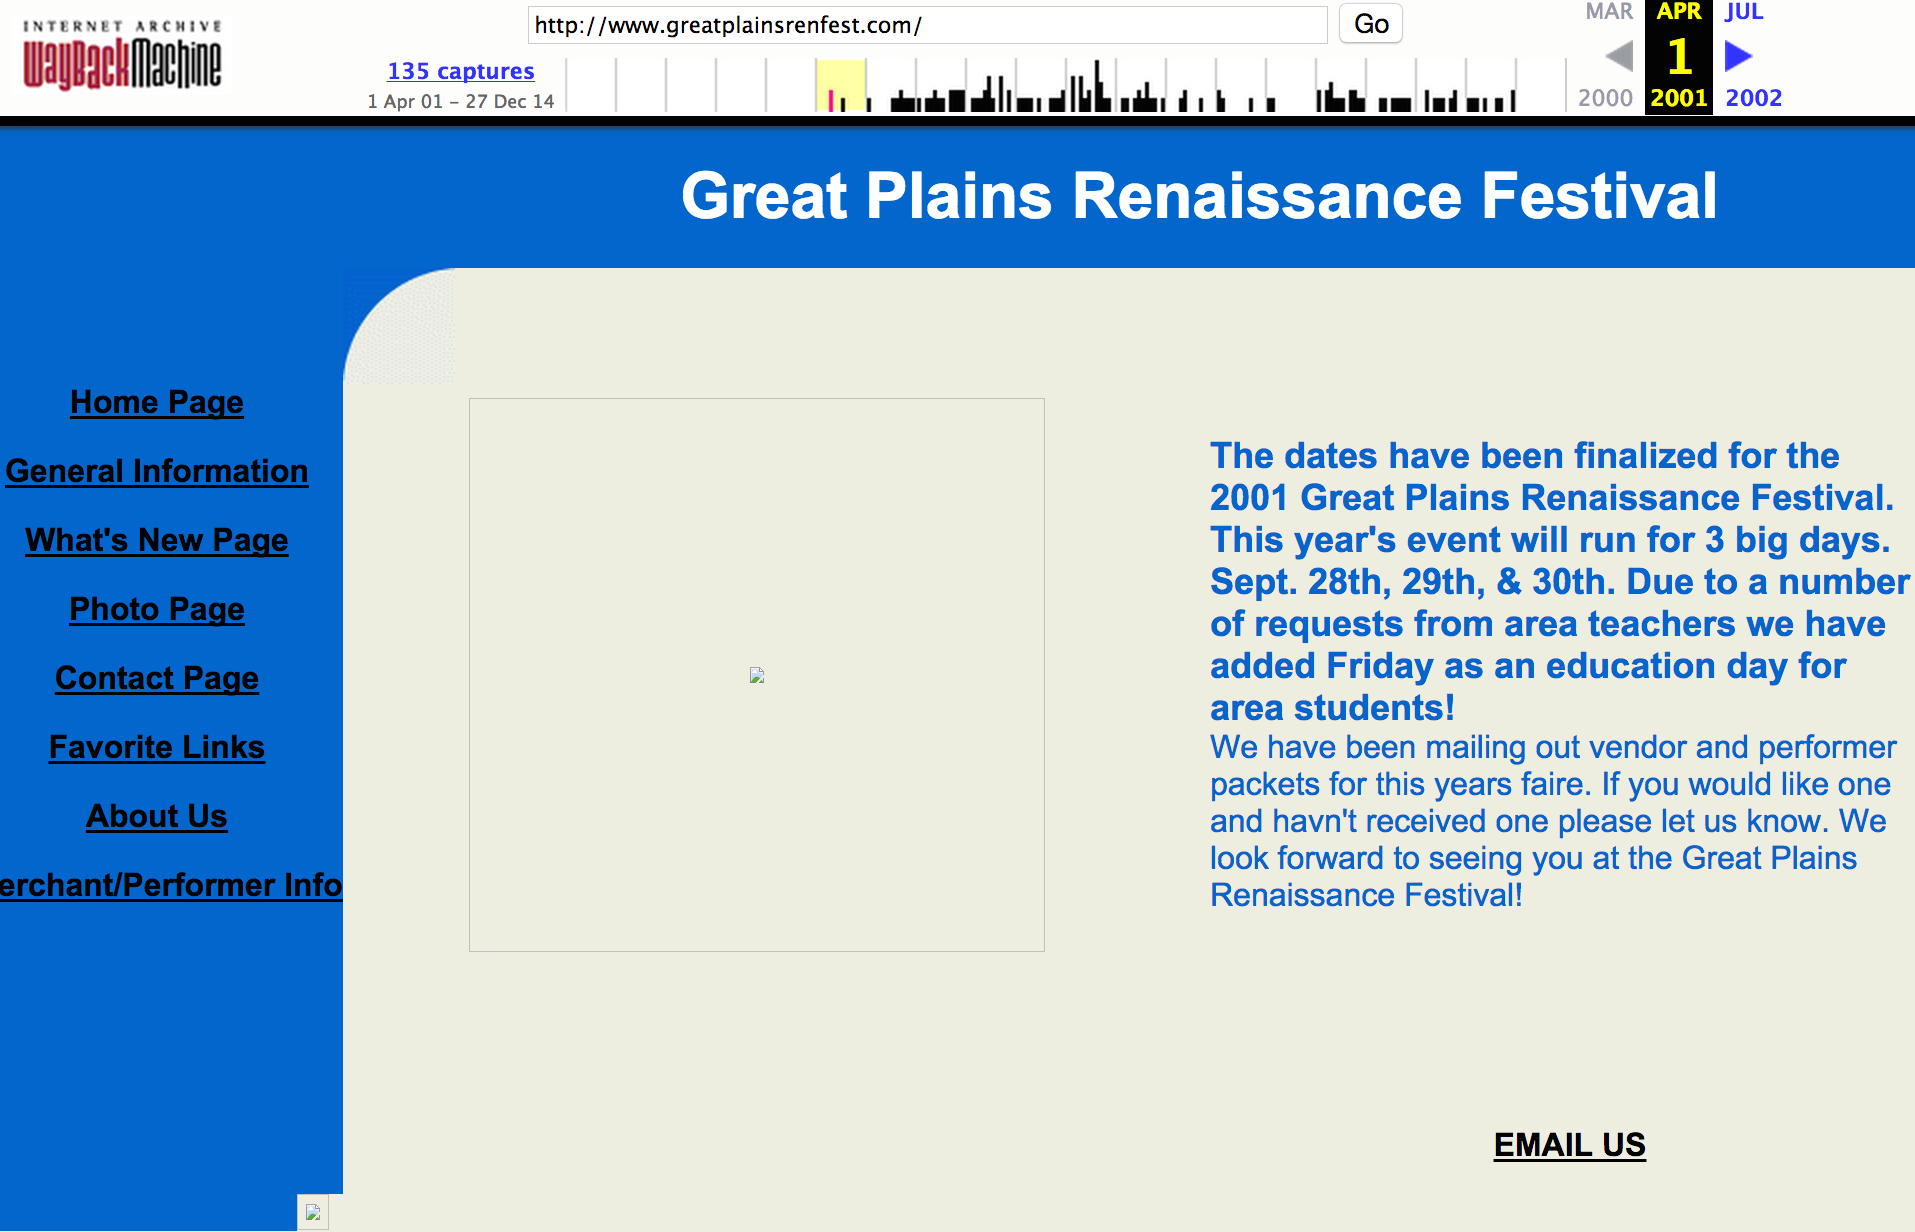 The Great Plains Renaissance Festival Website Overhaul! Great Plains